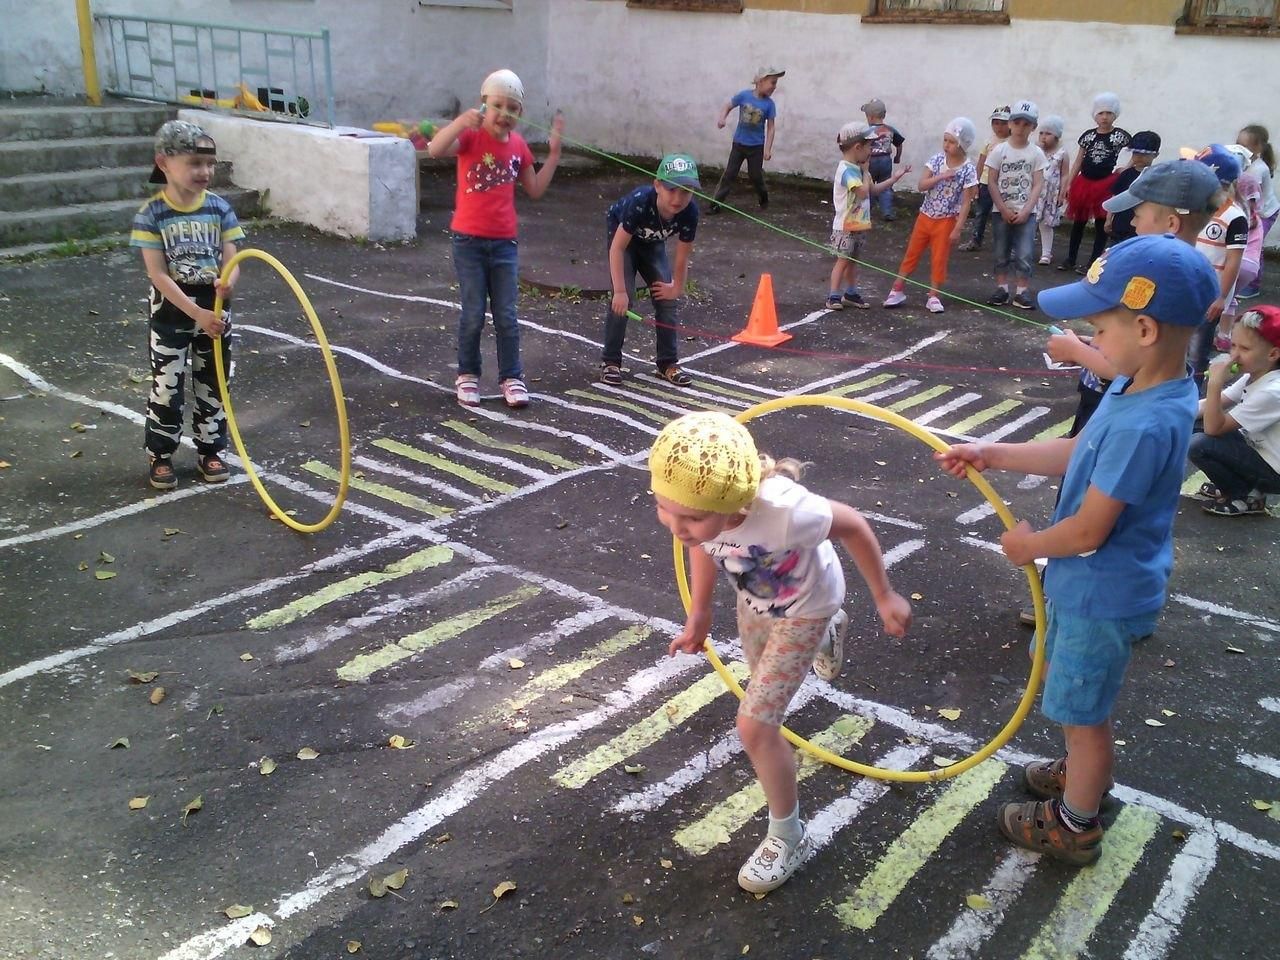 Спортивный праздник эстафеты. Спортивный игрый для детей. Спортивный праздник в детском саду. Физкультурные праздники в детском саду. Игры для детей на улице.